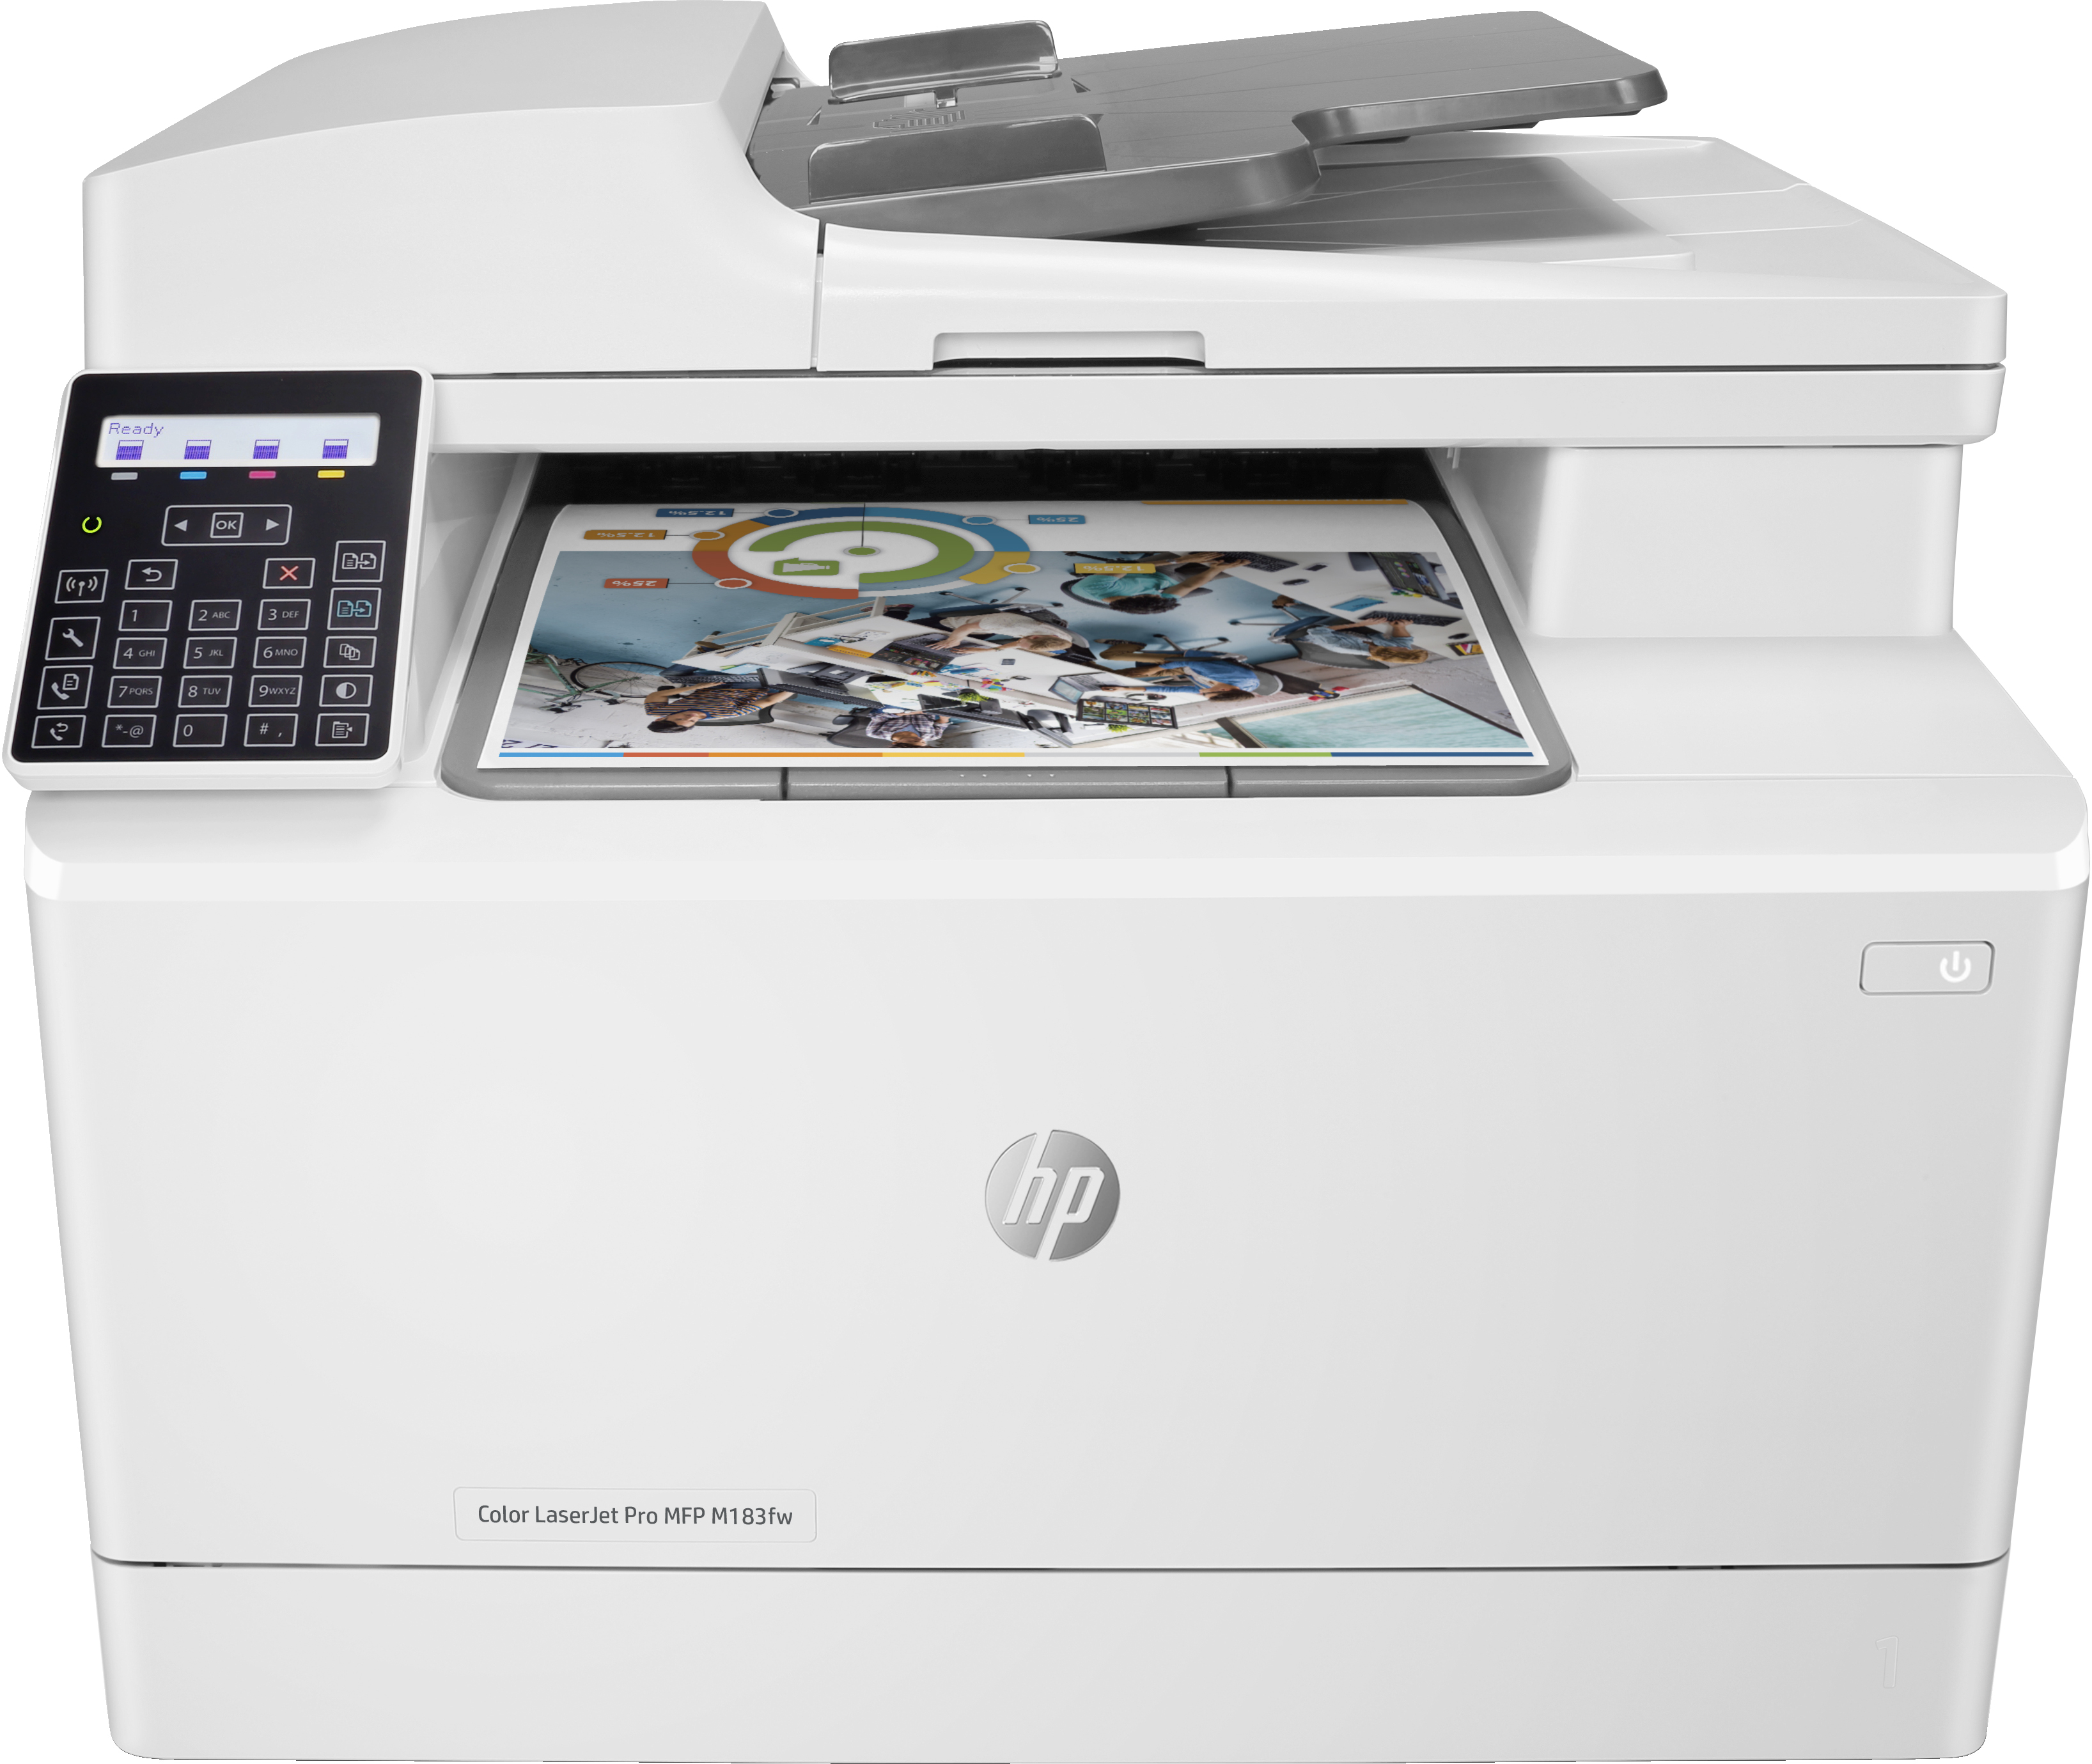 HP Color LaserJet Pro MFP M183fw, Skriv ut, kopiera, skanna, fax, 35-arks ADF; Energieffektiv; Hög säkerhet; Dual band Wi-Fi